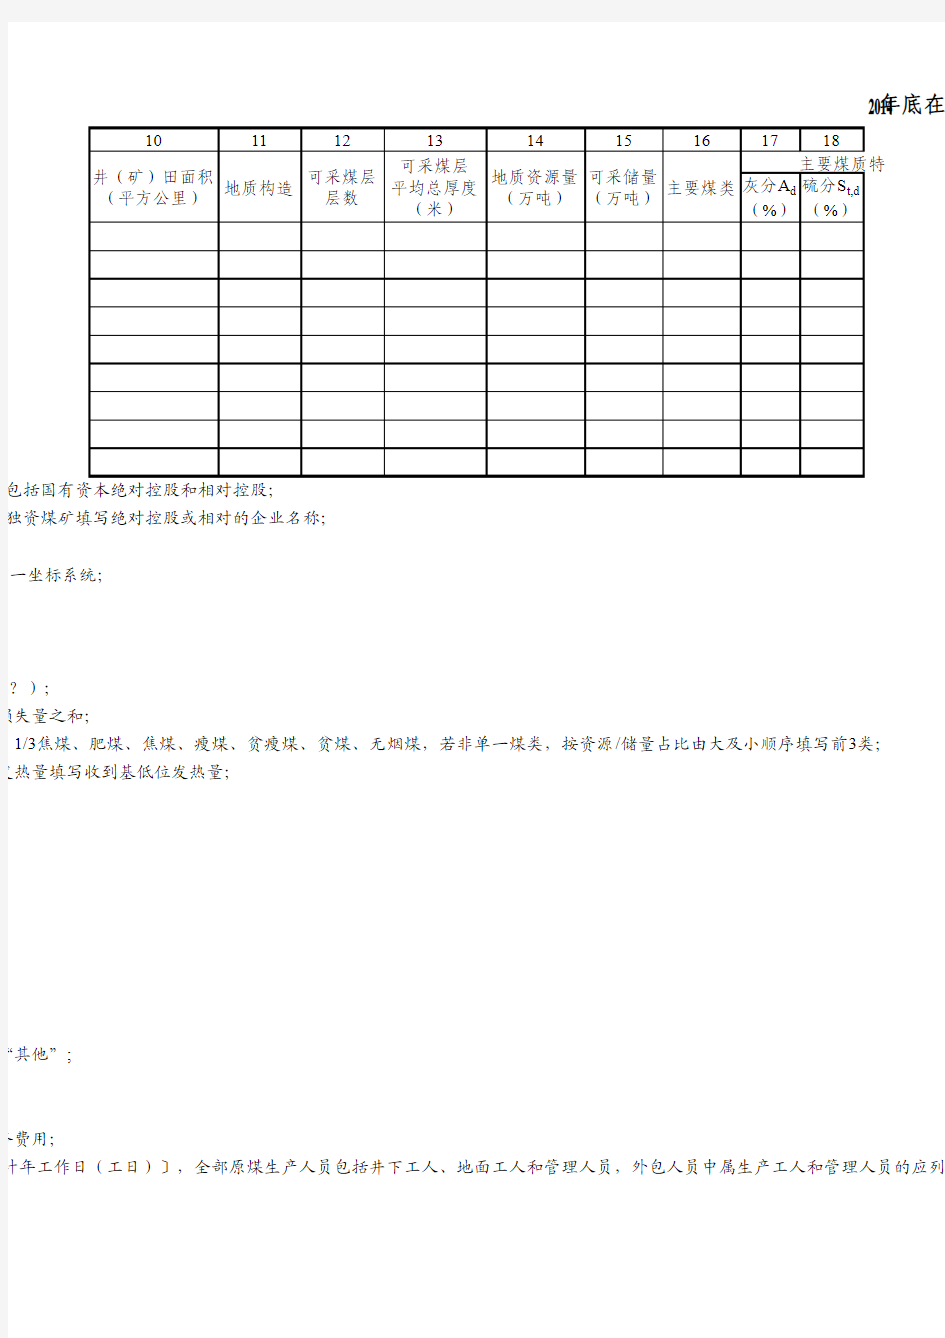 四川省煤炭工业发展“十三五”规划数据表